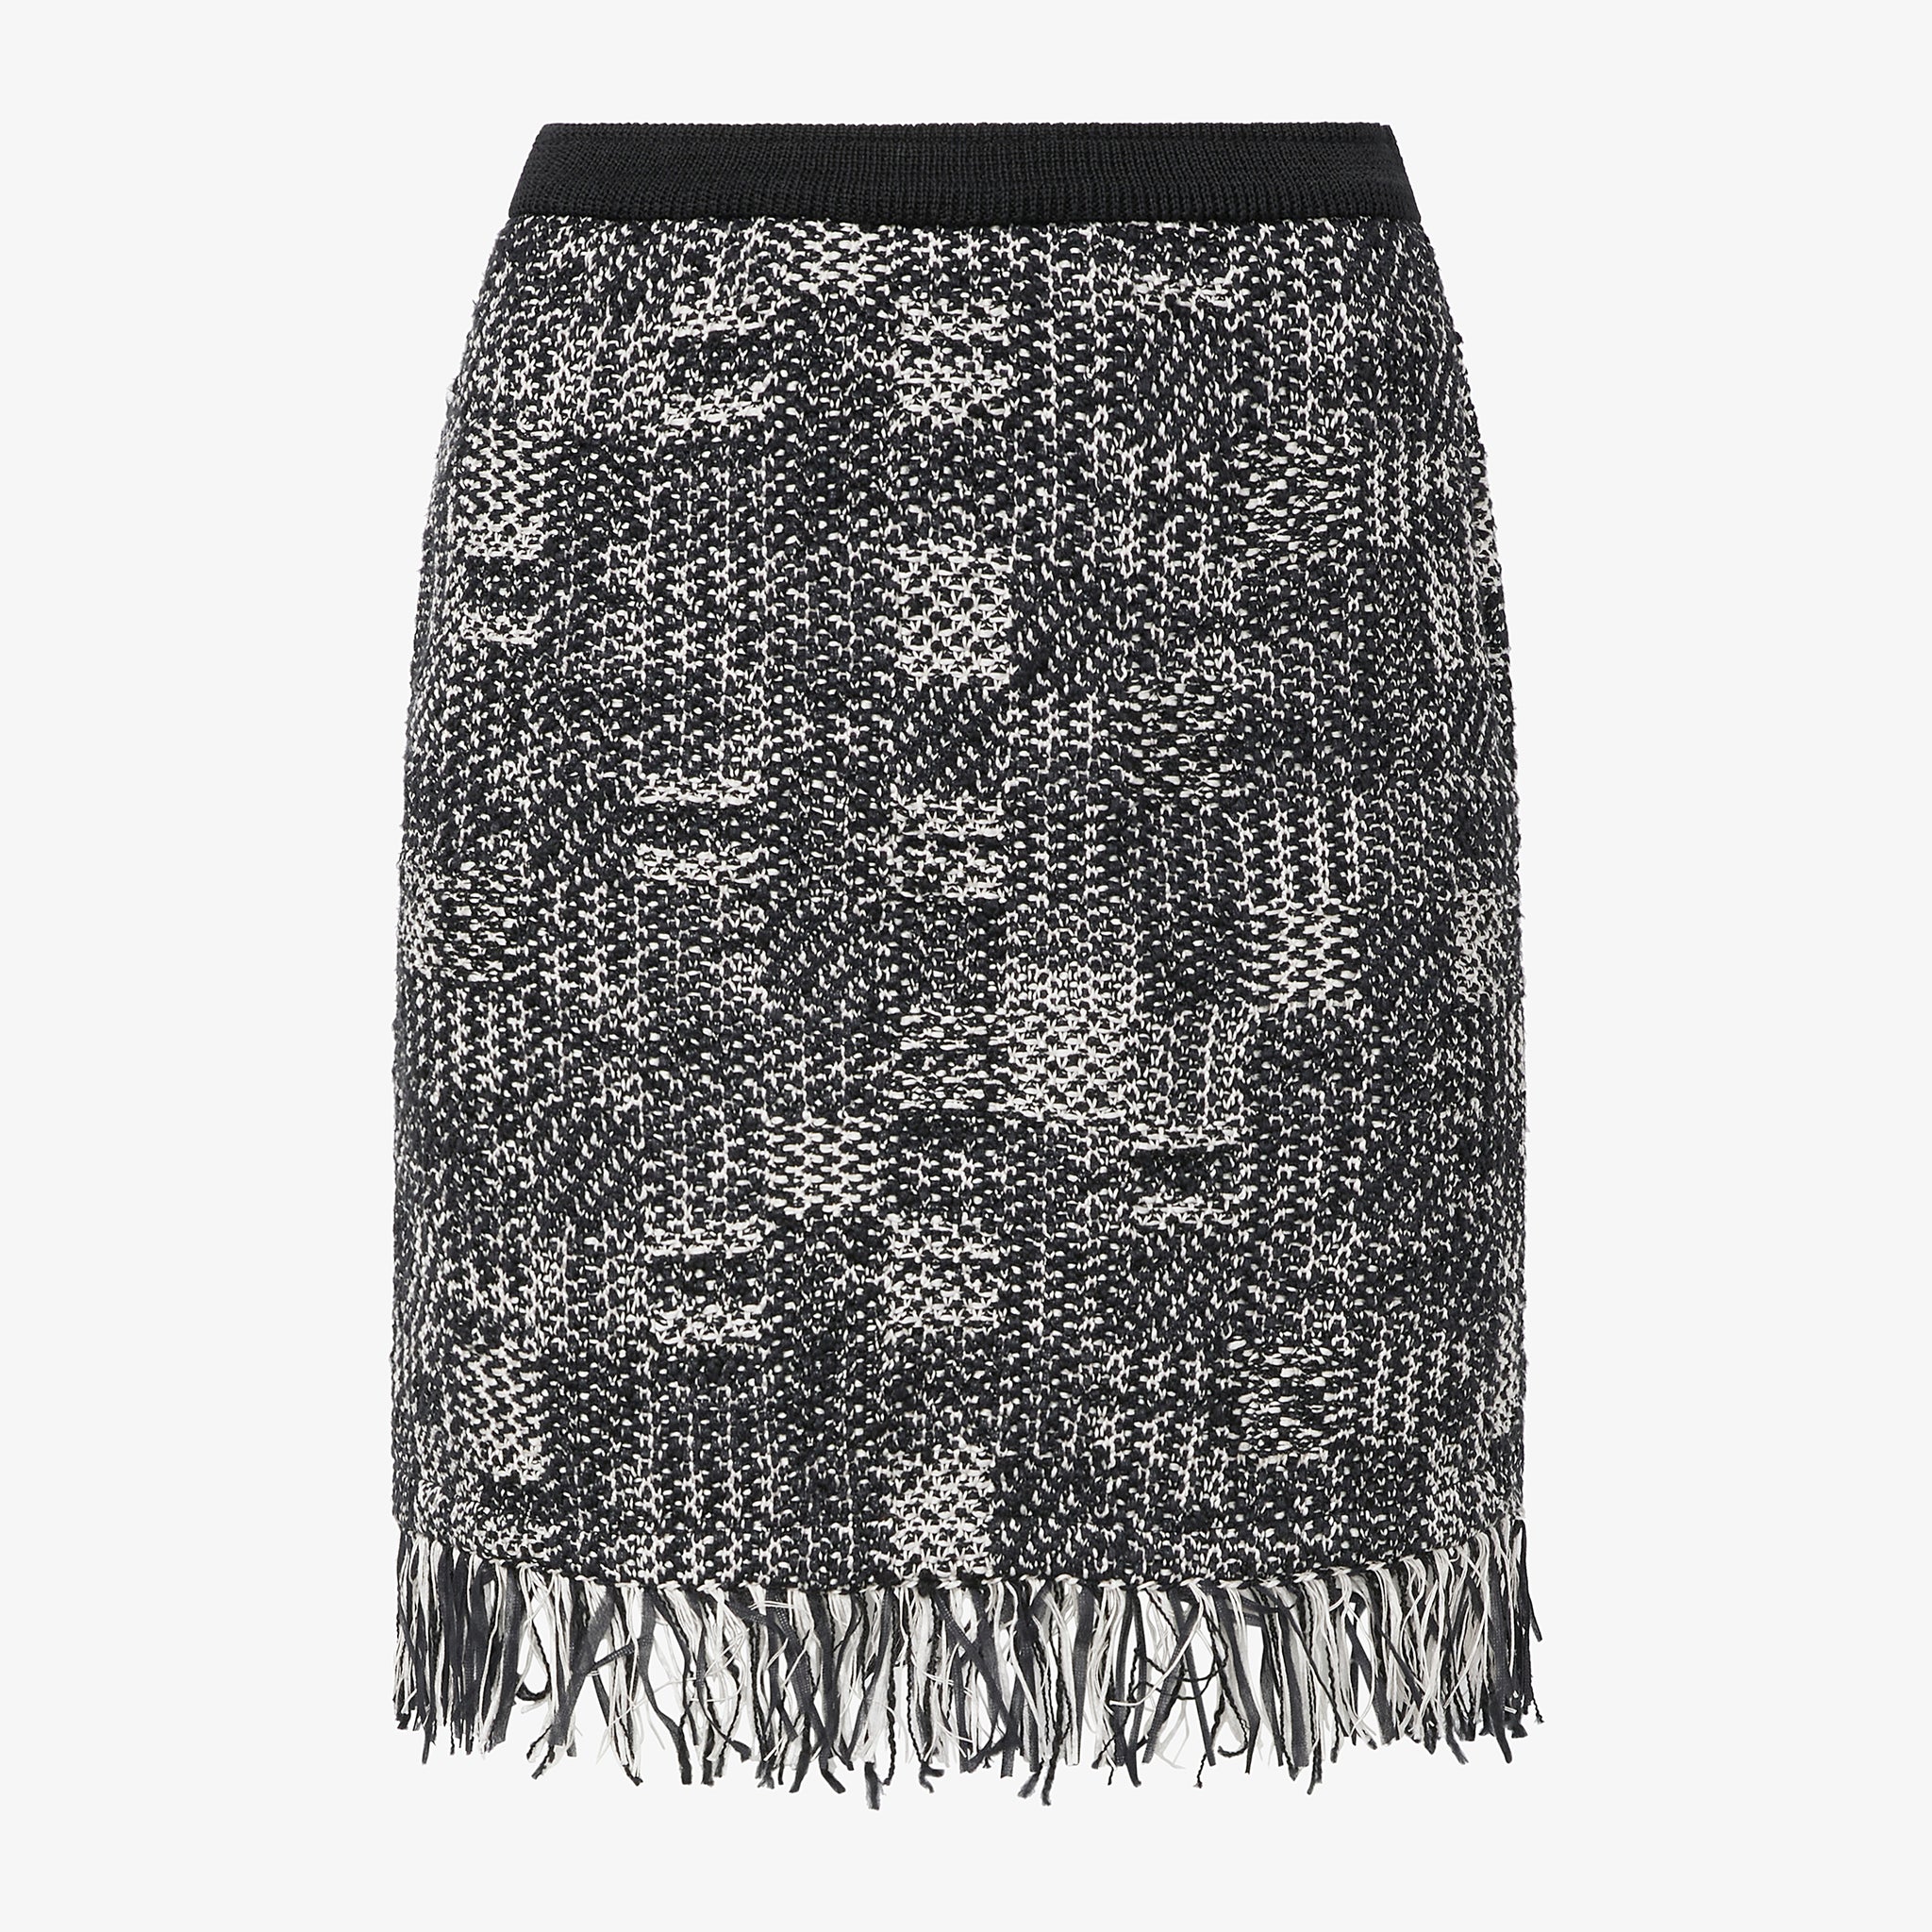 Packshot image of the Krista Skirt - Interweave in Black / White